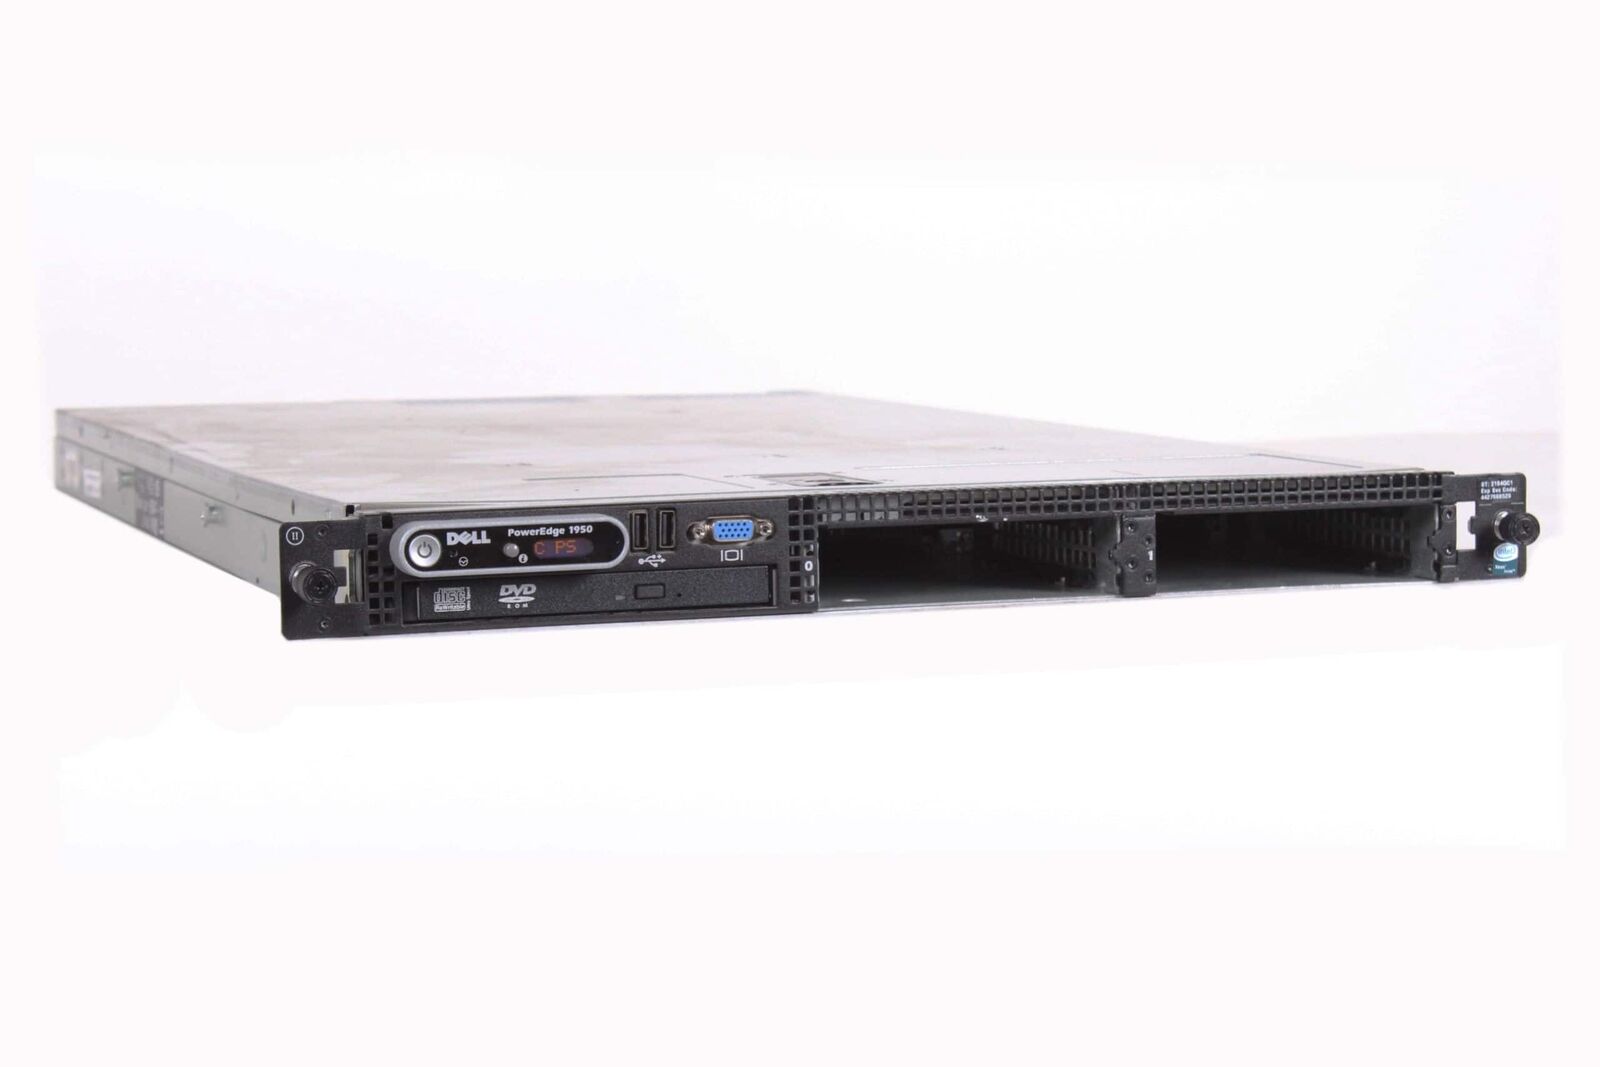 Dell PowerEdge 1950 Rack Server (1330-322)